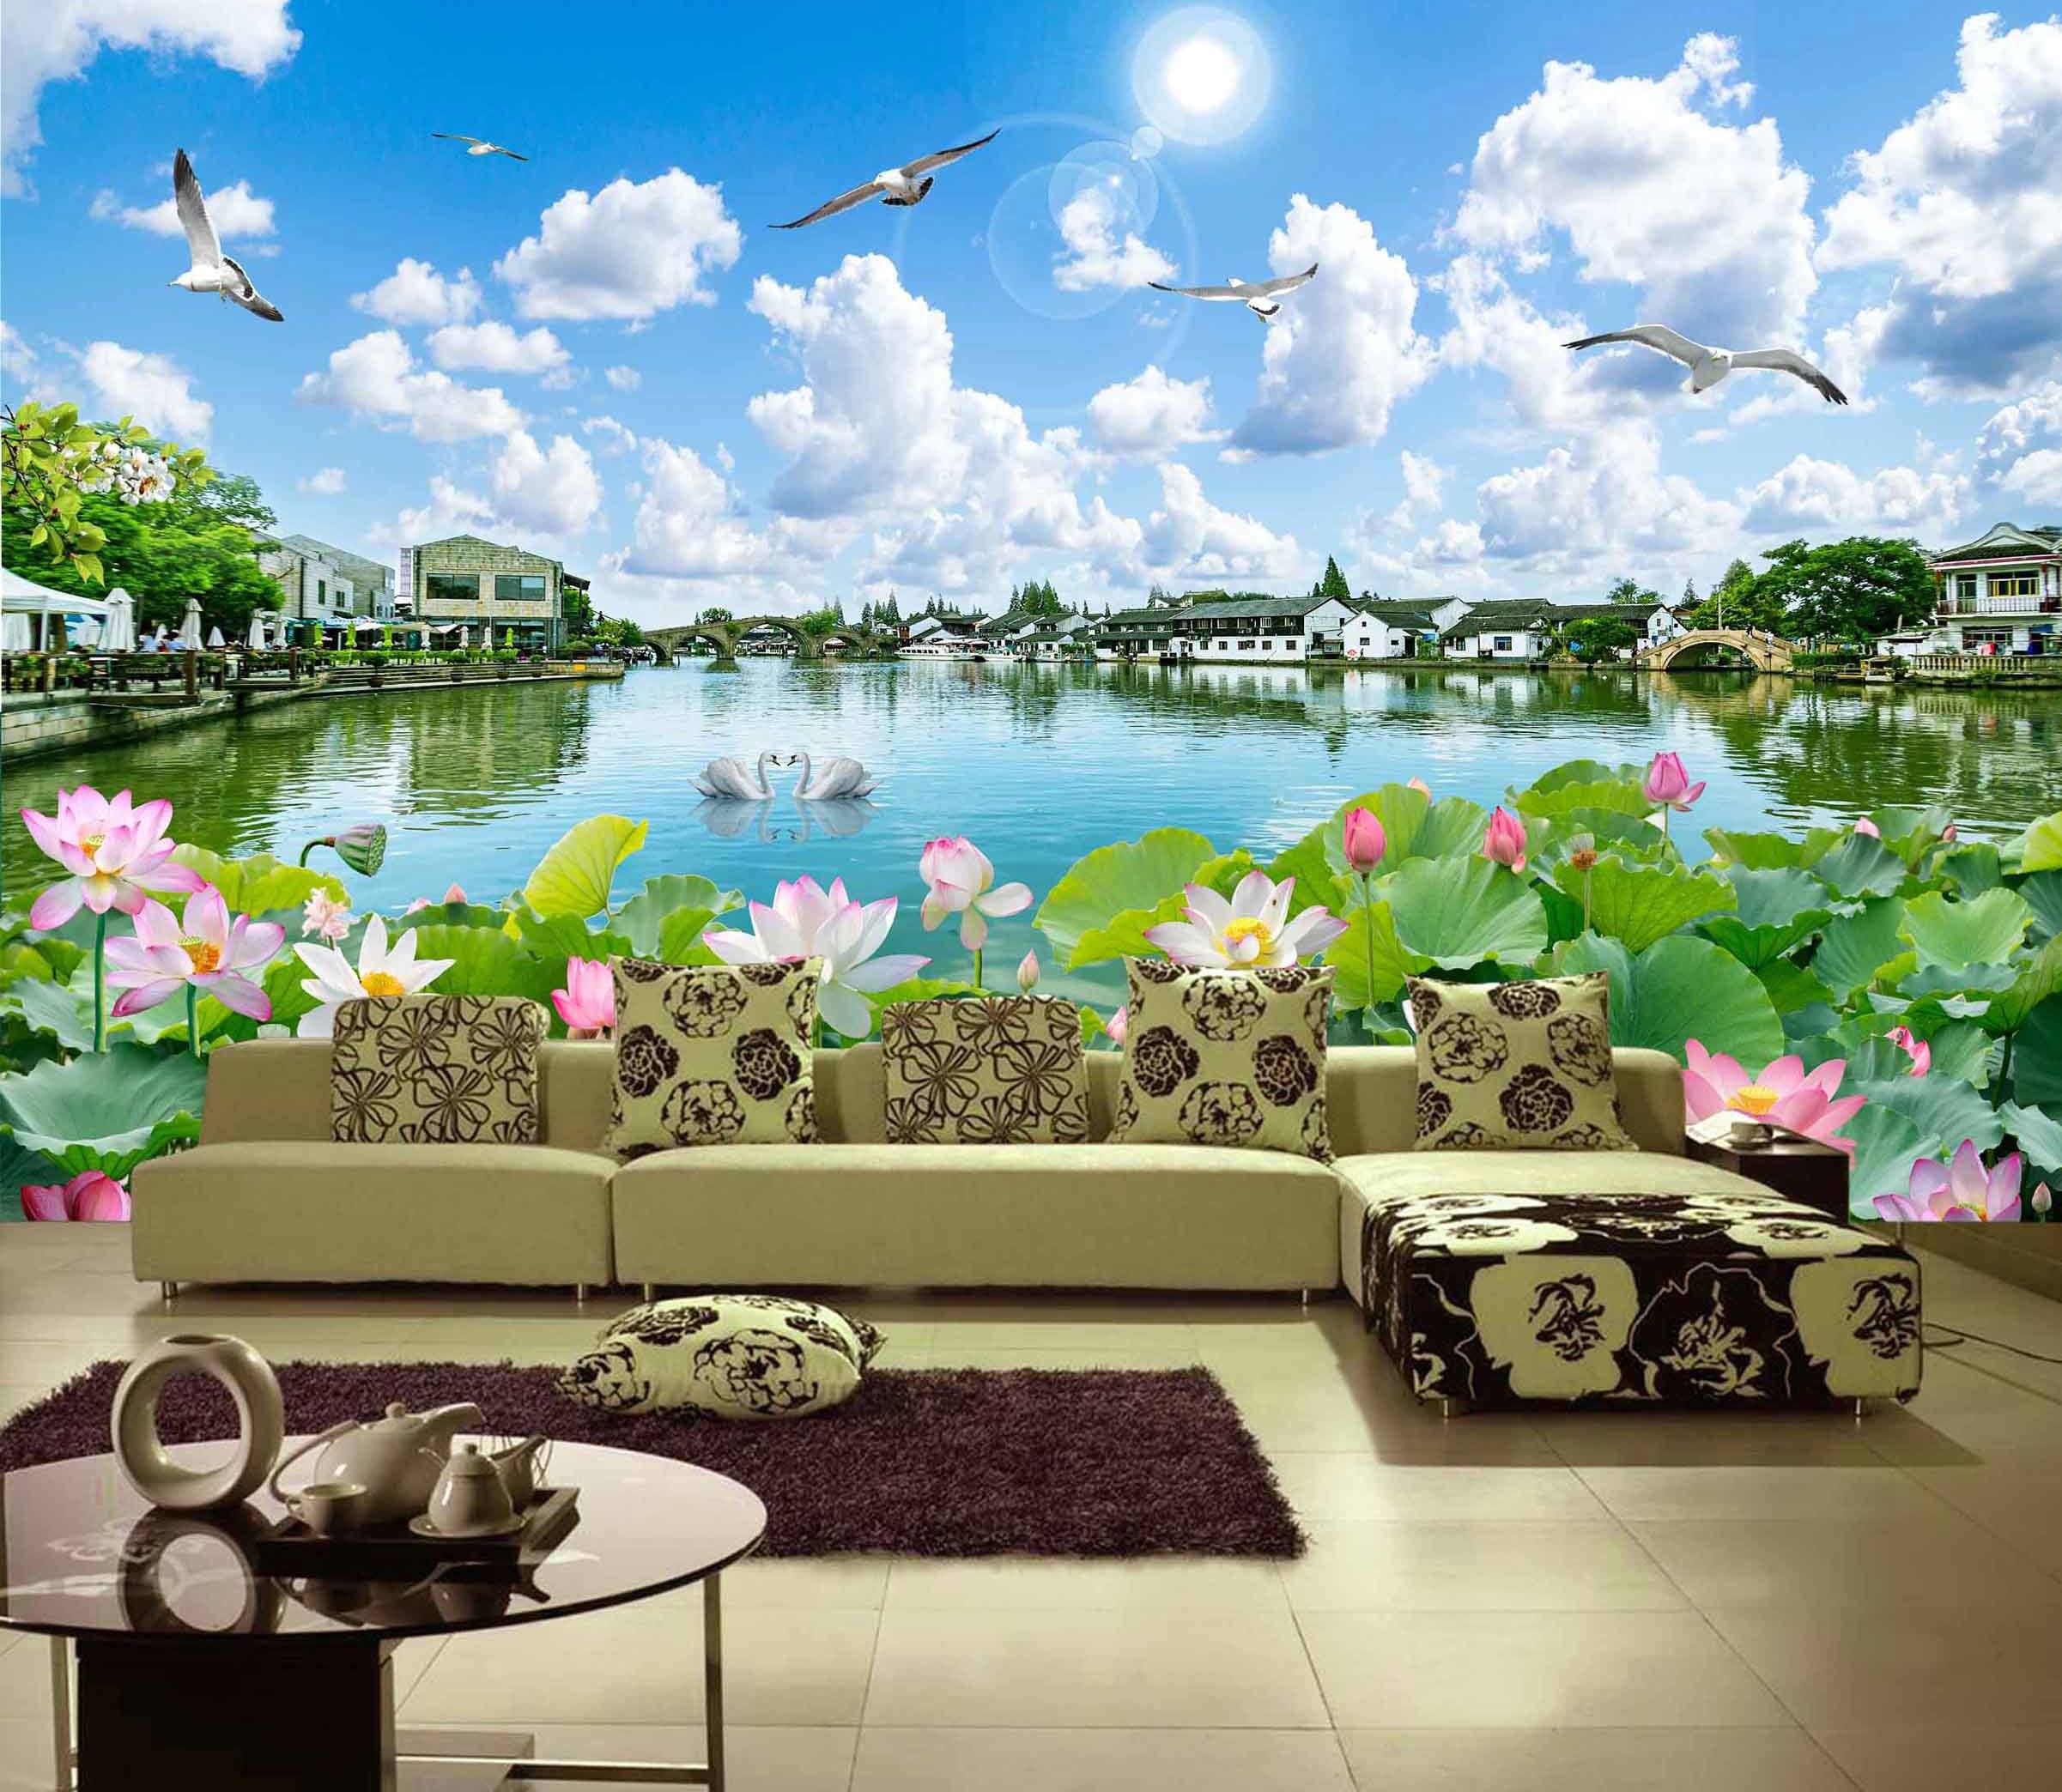 3D Lotus Pond Town 289 Wallpaper AJ Wallpaper 